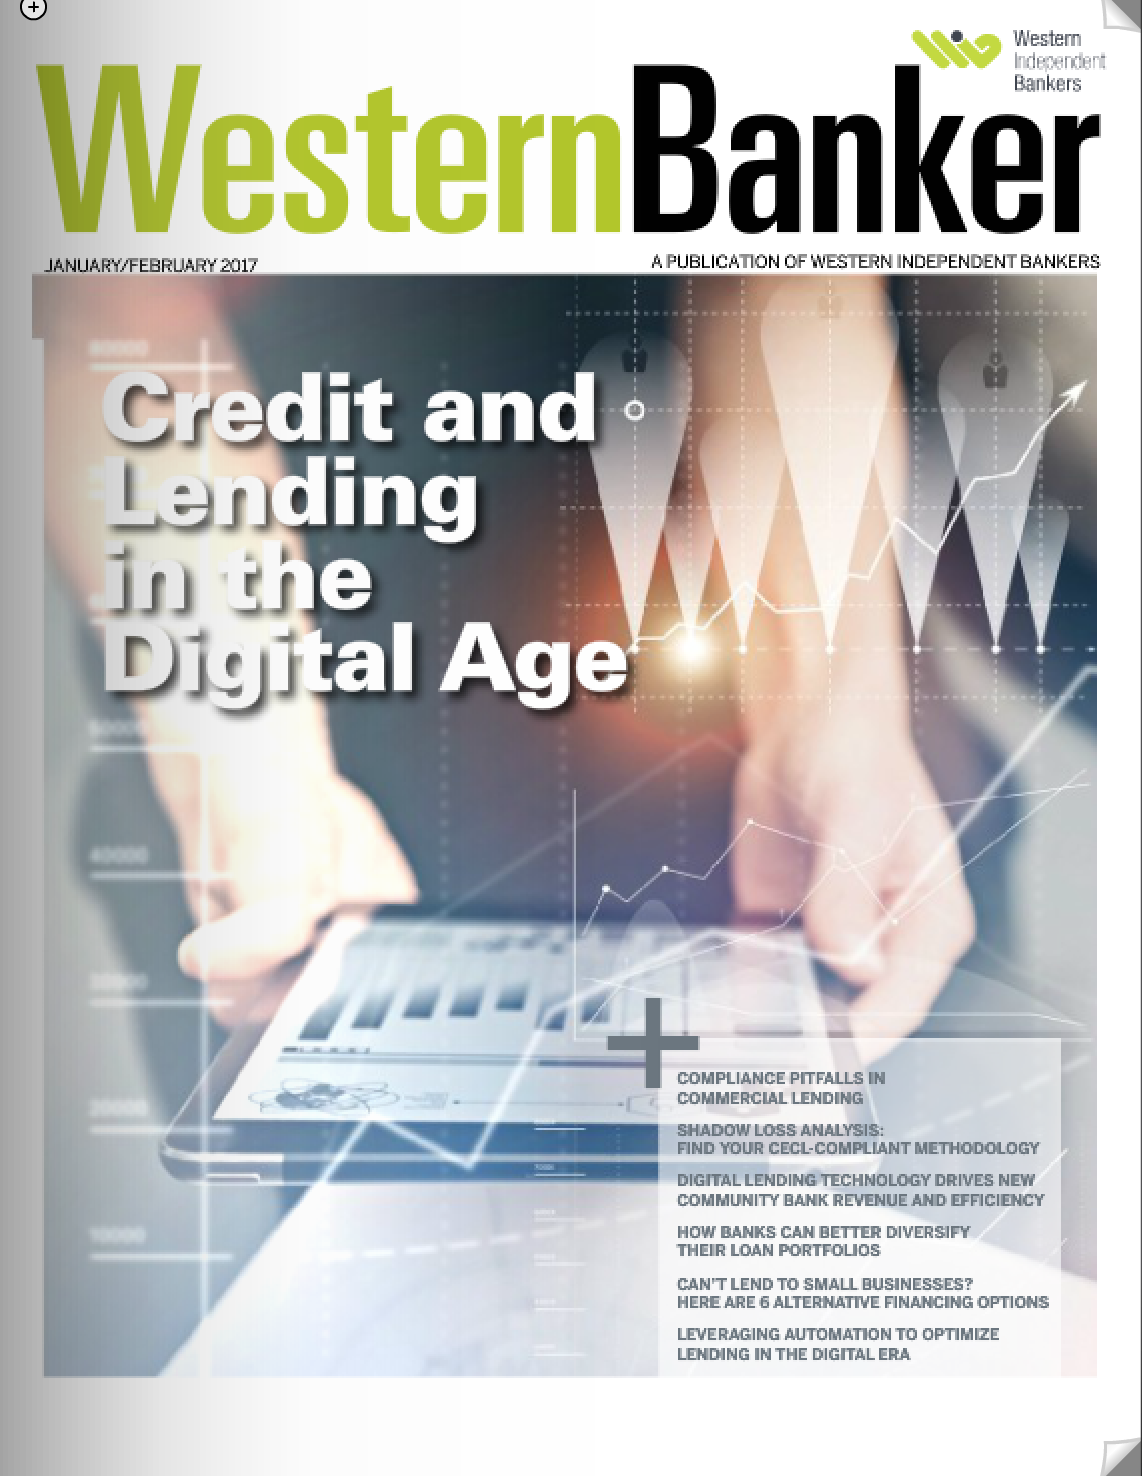 Western Banker September 2016